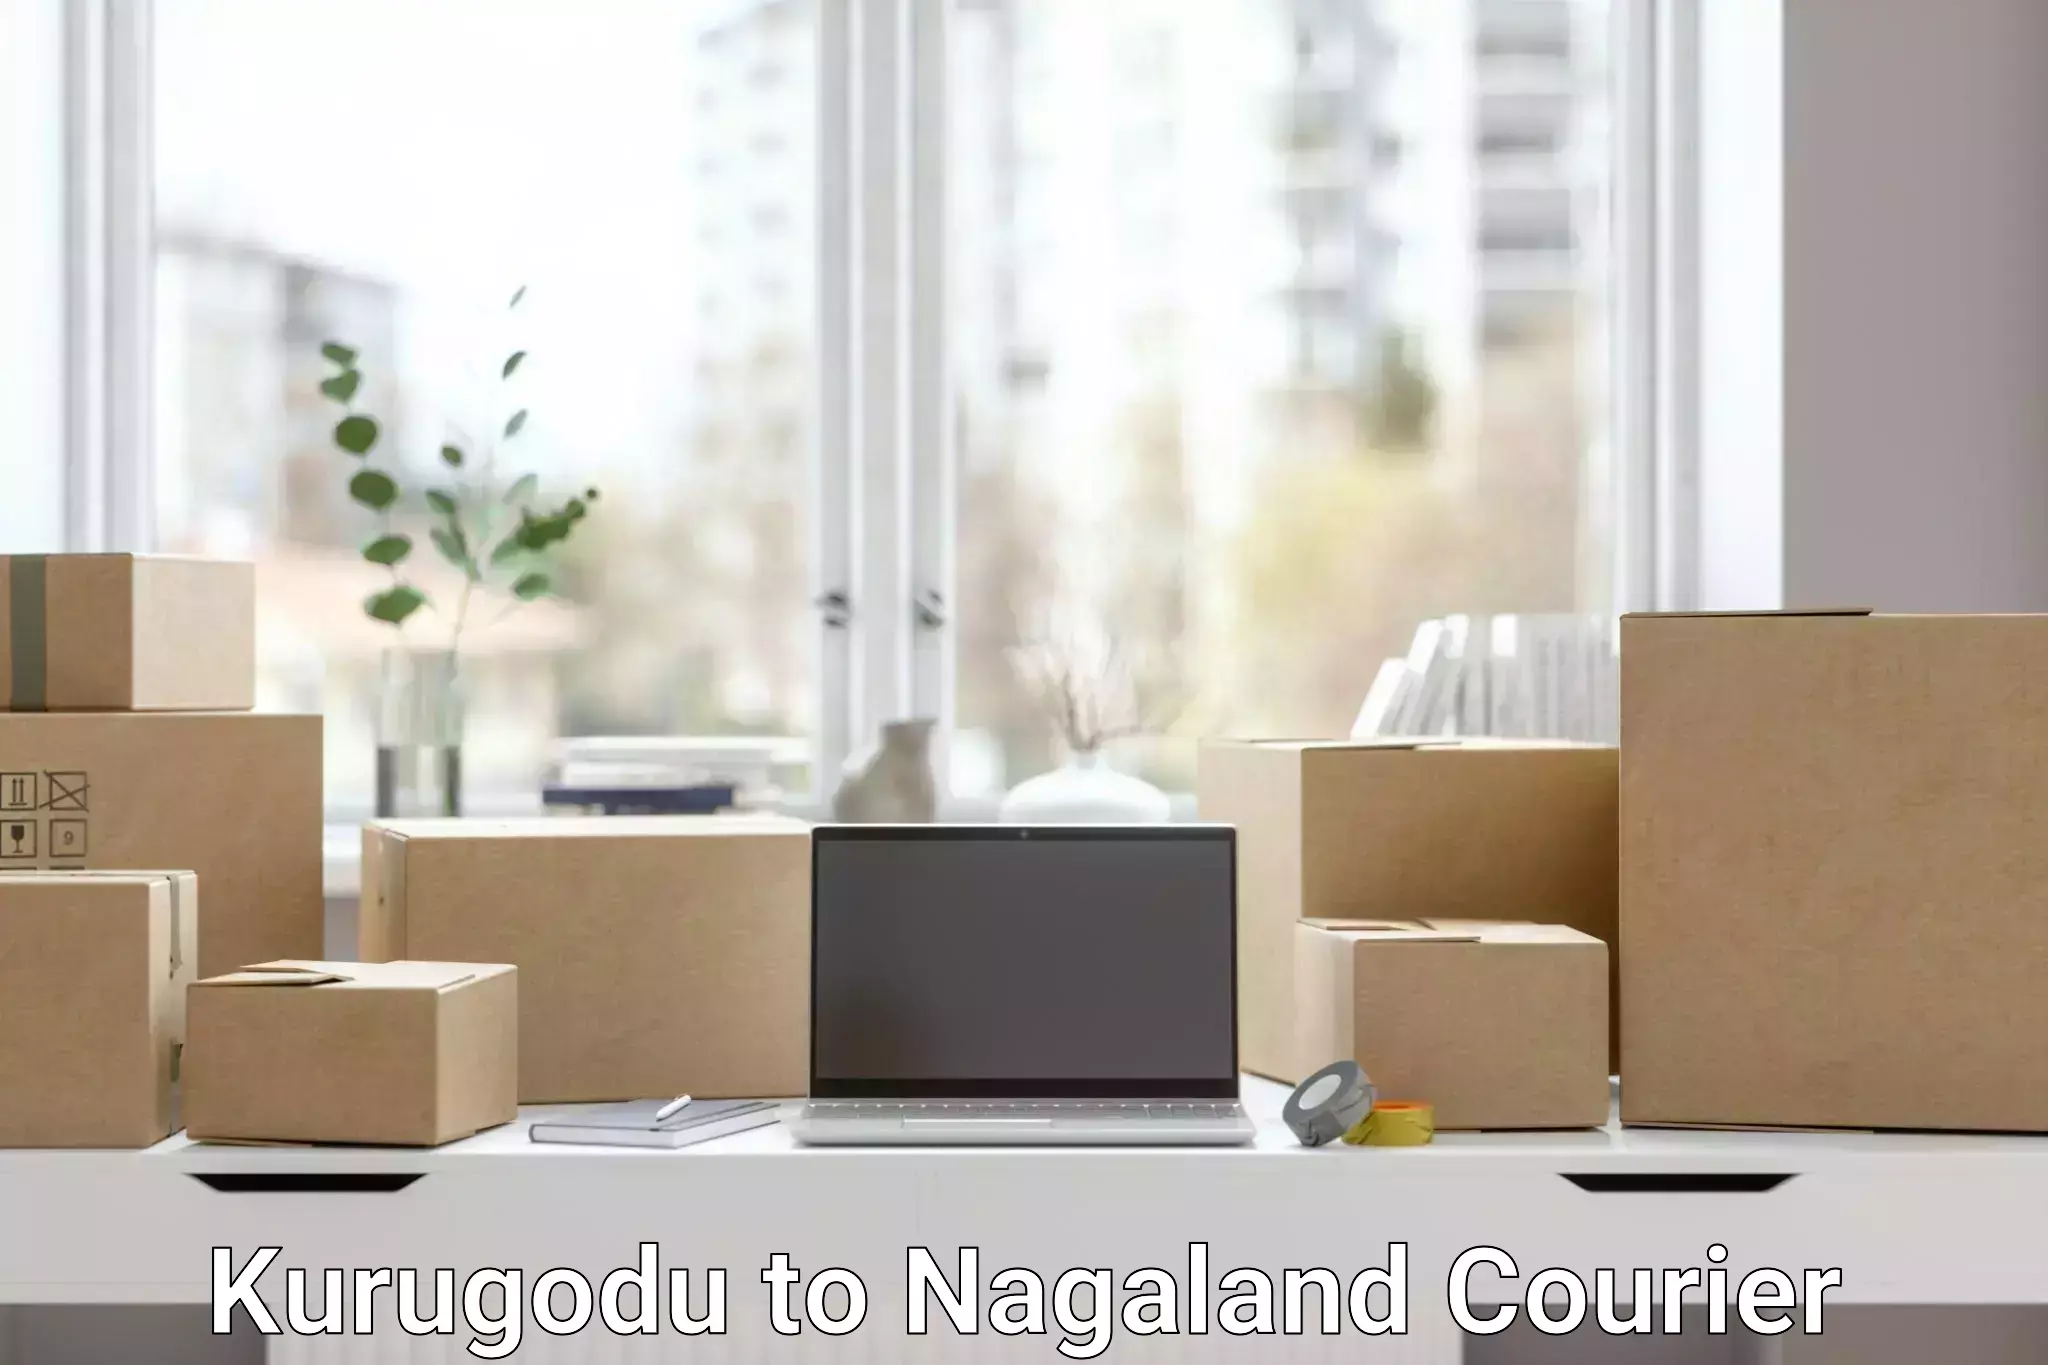 Efficient parcel delivery Kurugodu to NIT Nagaland